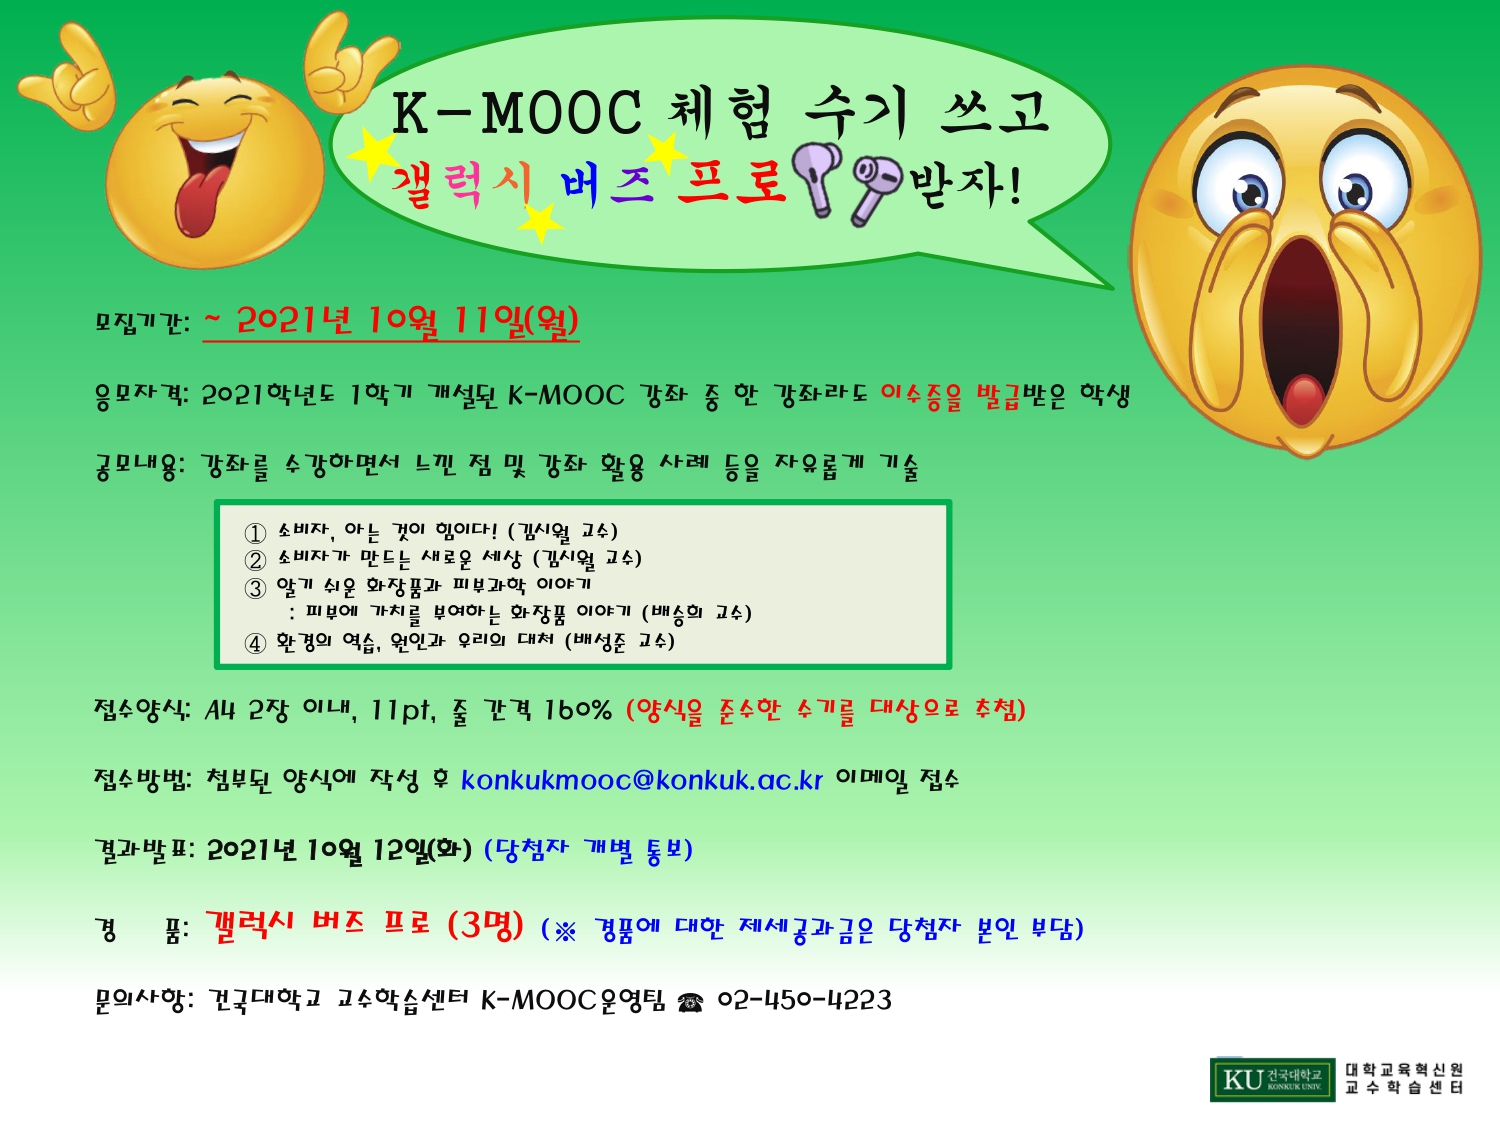 K-MOOC 체험 수기 공모 안내 포스터_2차연장_.jpg